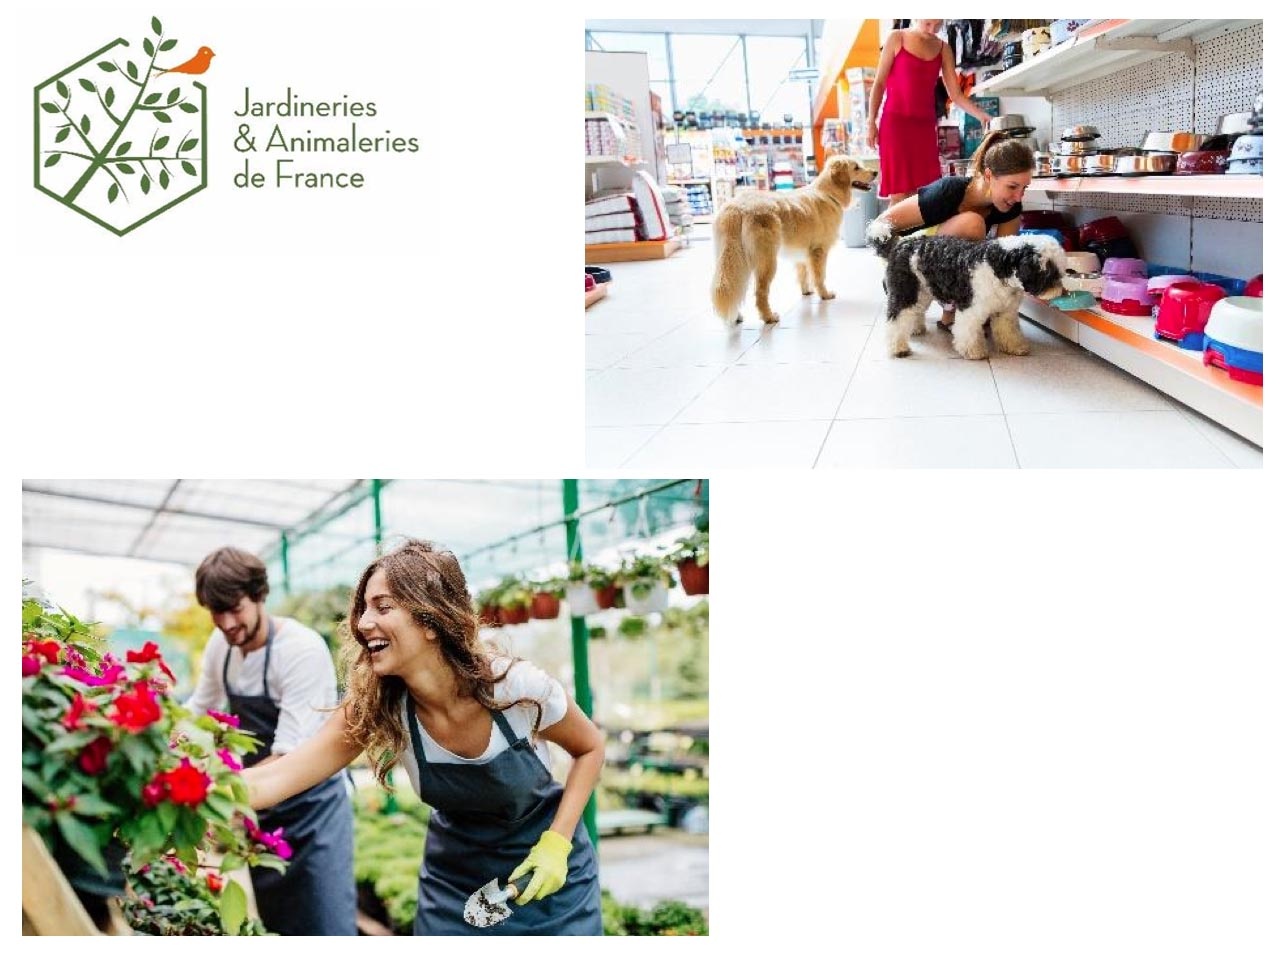 Jardineries et Animaleries de France : 3ème confinement, autorisation d’ouverture des jardineries